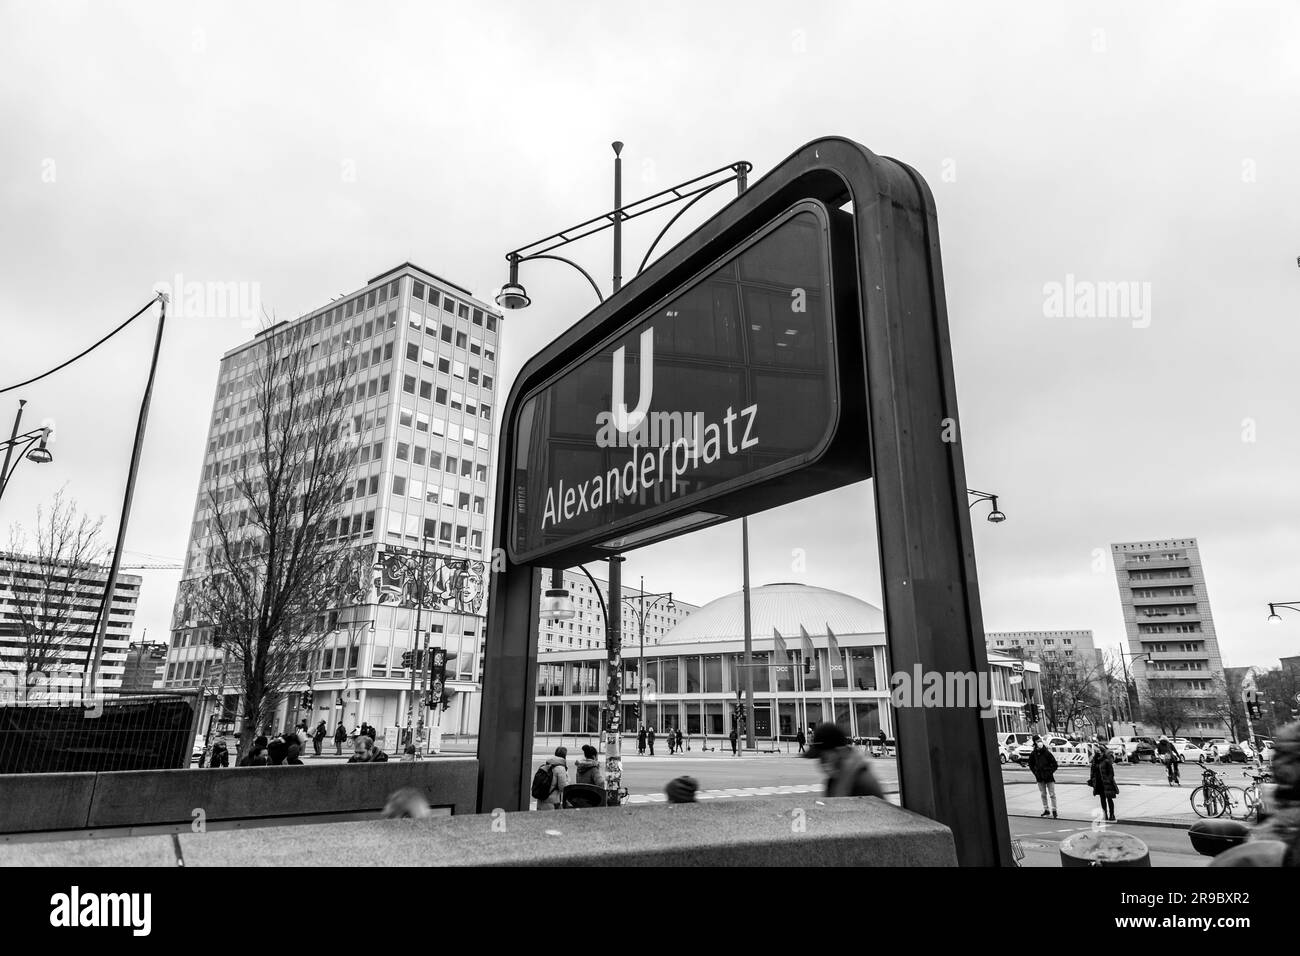 Berlino, Germania - 21 dicembre 2021: Ingresso della stazione della metropolitana e indicazione per la stazione Alexanderplatz della metropolitana di Berlino. Foto Stock